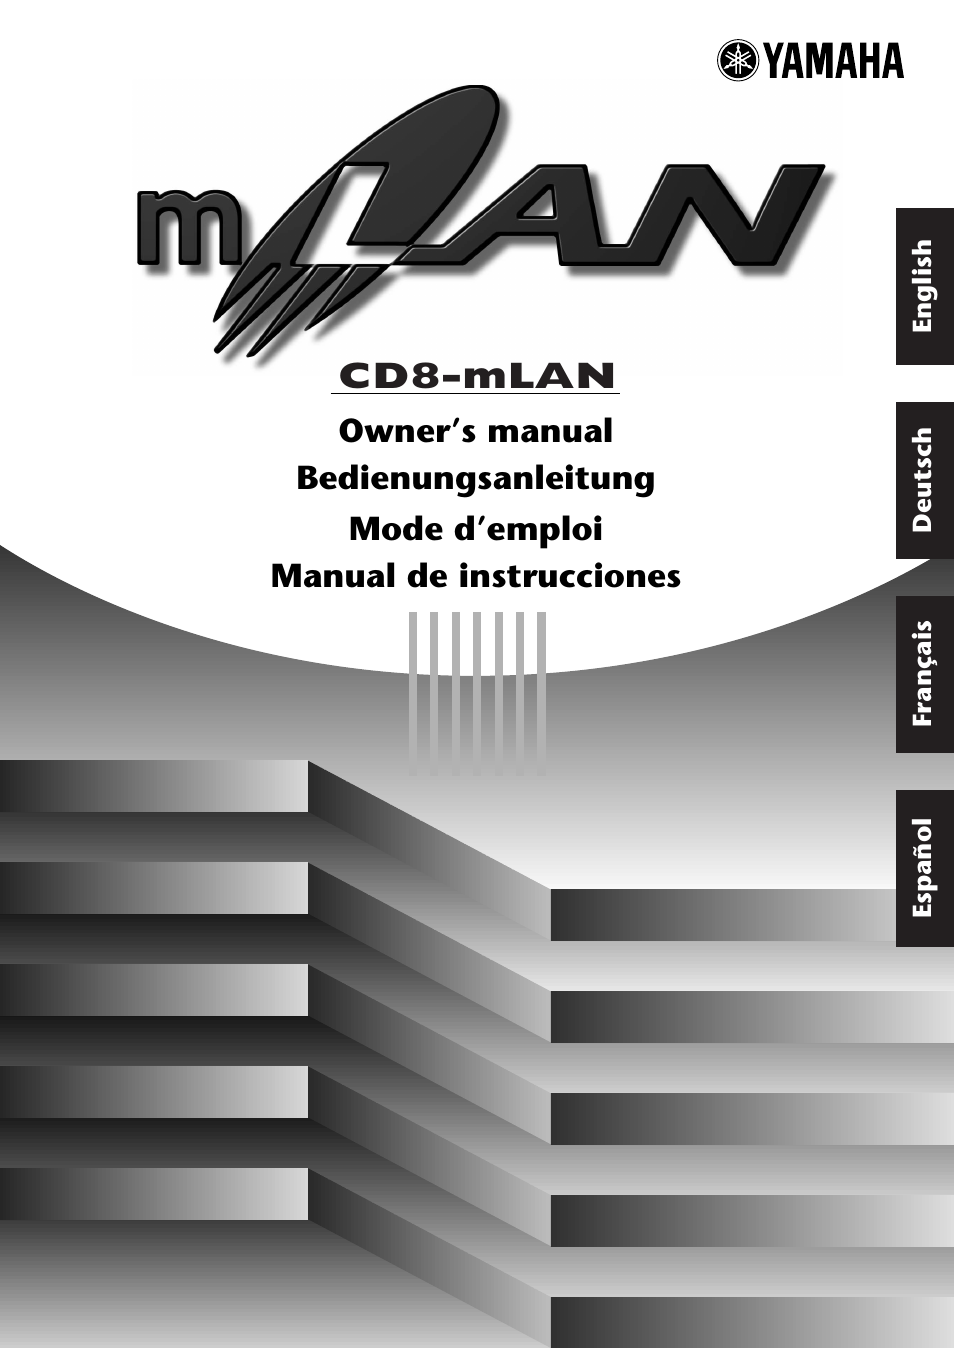 CD8-mLAN